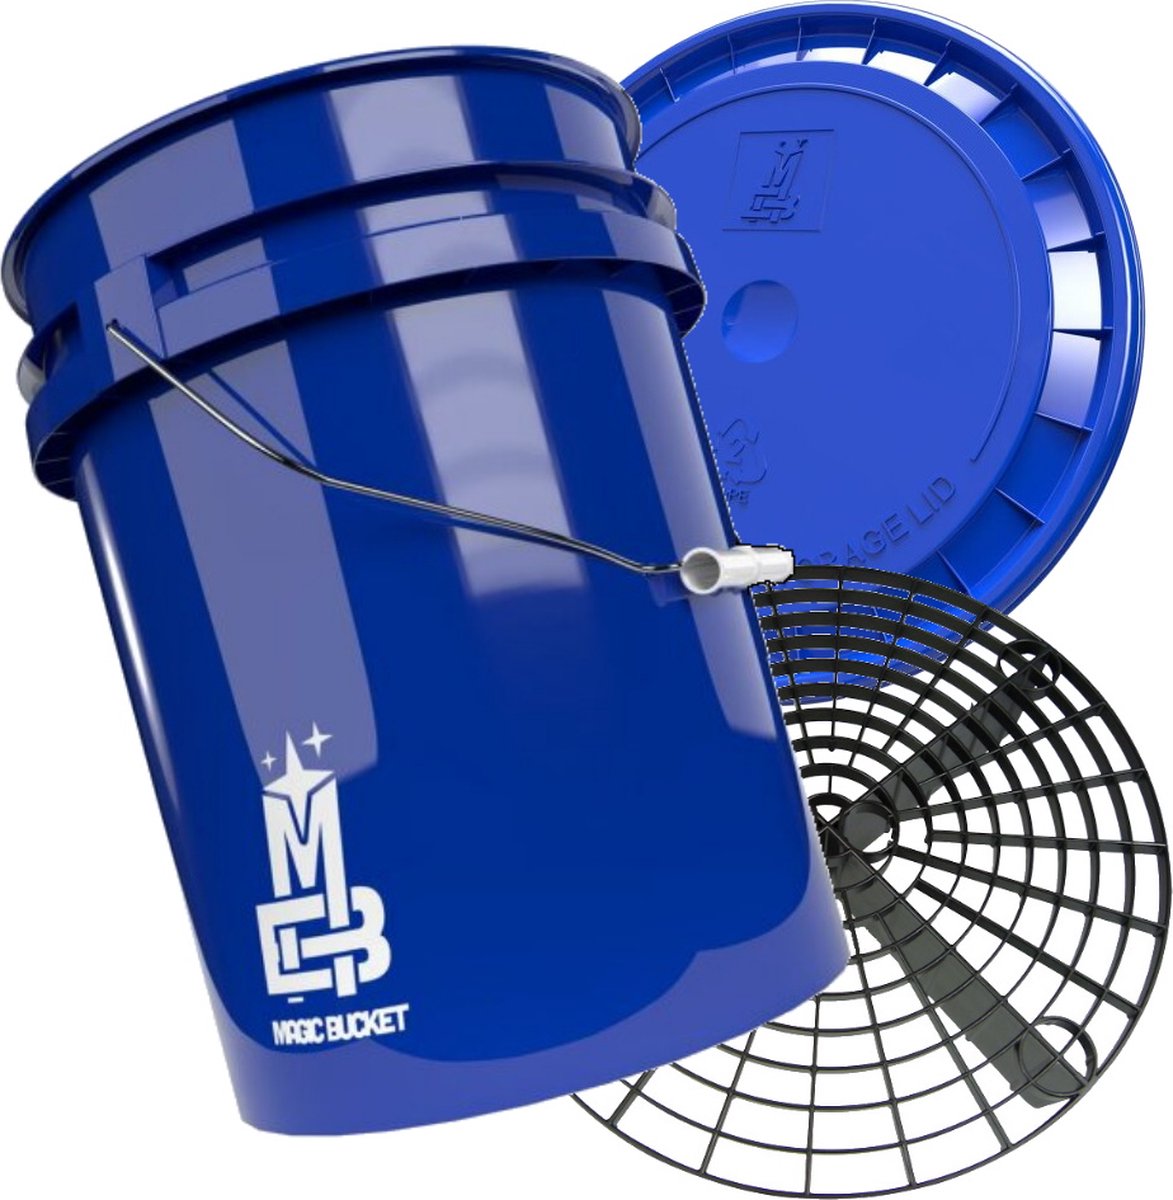 Magic Bucket 5 Gal 19 ltr wasemmer Blauw met grit en deksel! Geschikt voor alle grit guard accessoires